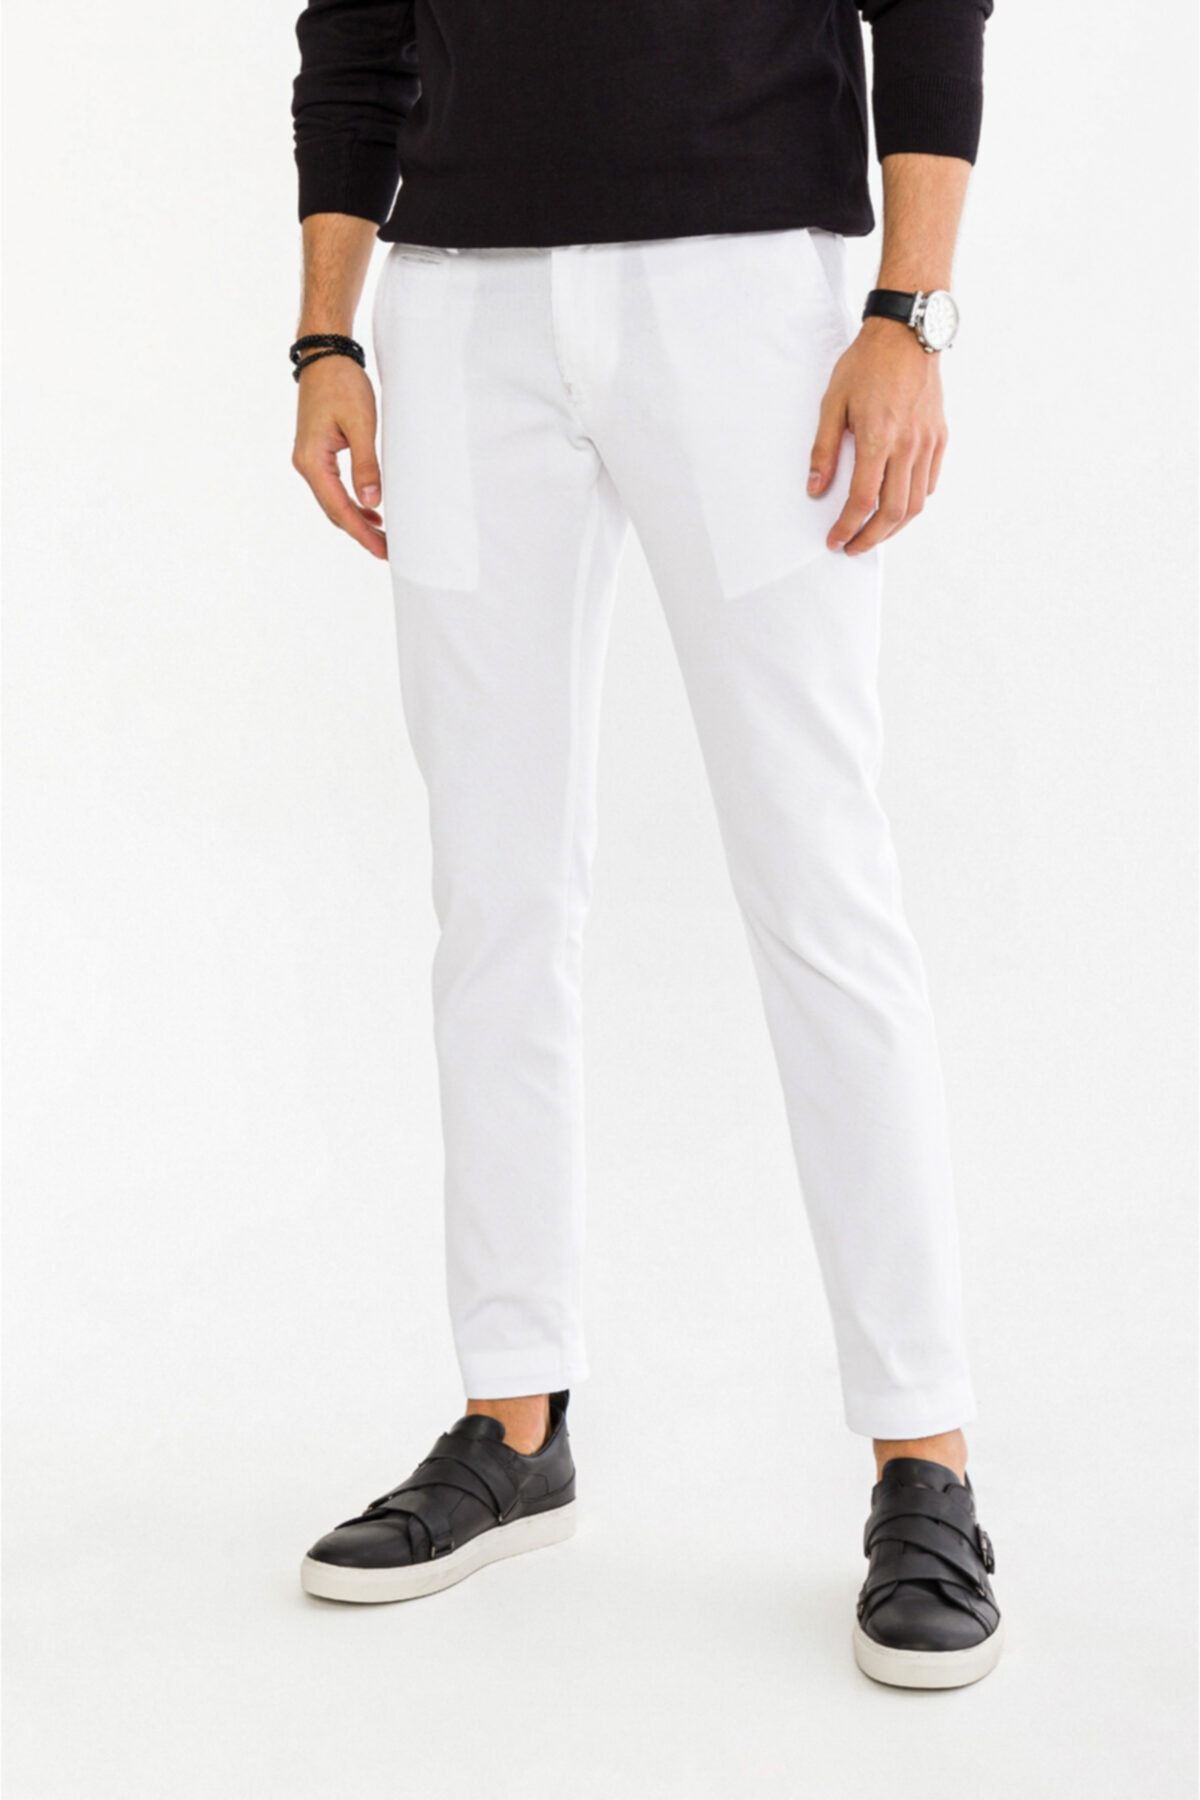 Avva Erkek Beyaz Yandan Cepli Armürlü Slim Fit Pantolon A91y3029